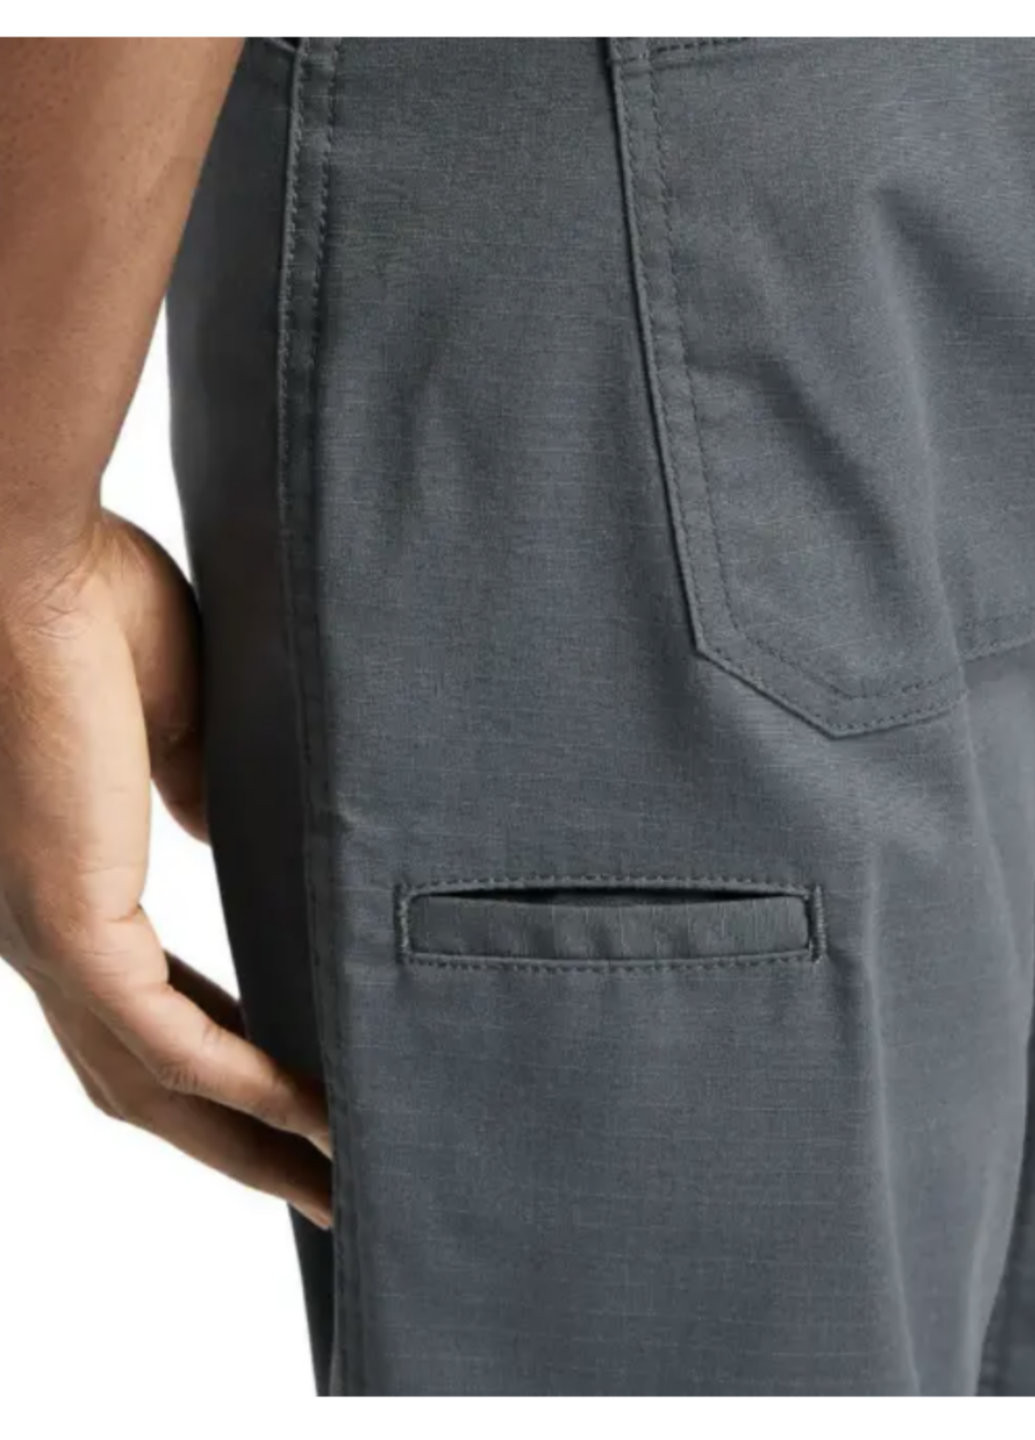 Чоловічі штани Timberland Pro work warrior розмір 32/32 темно-сірий No Brand (275111591)